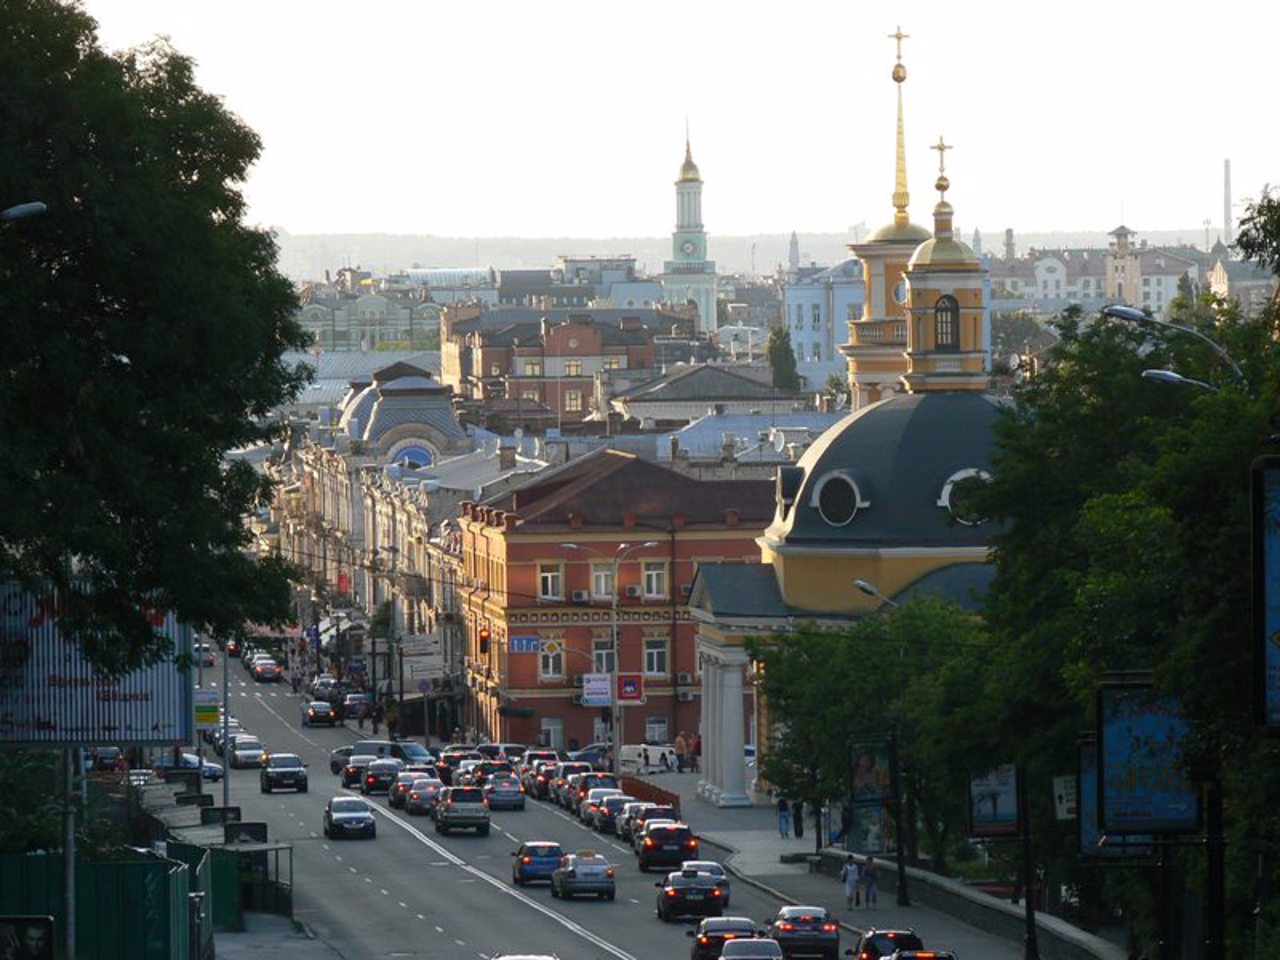 Poshtova Square, Kyiv